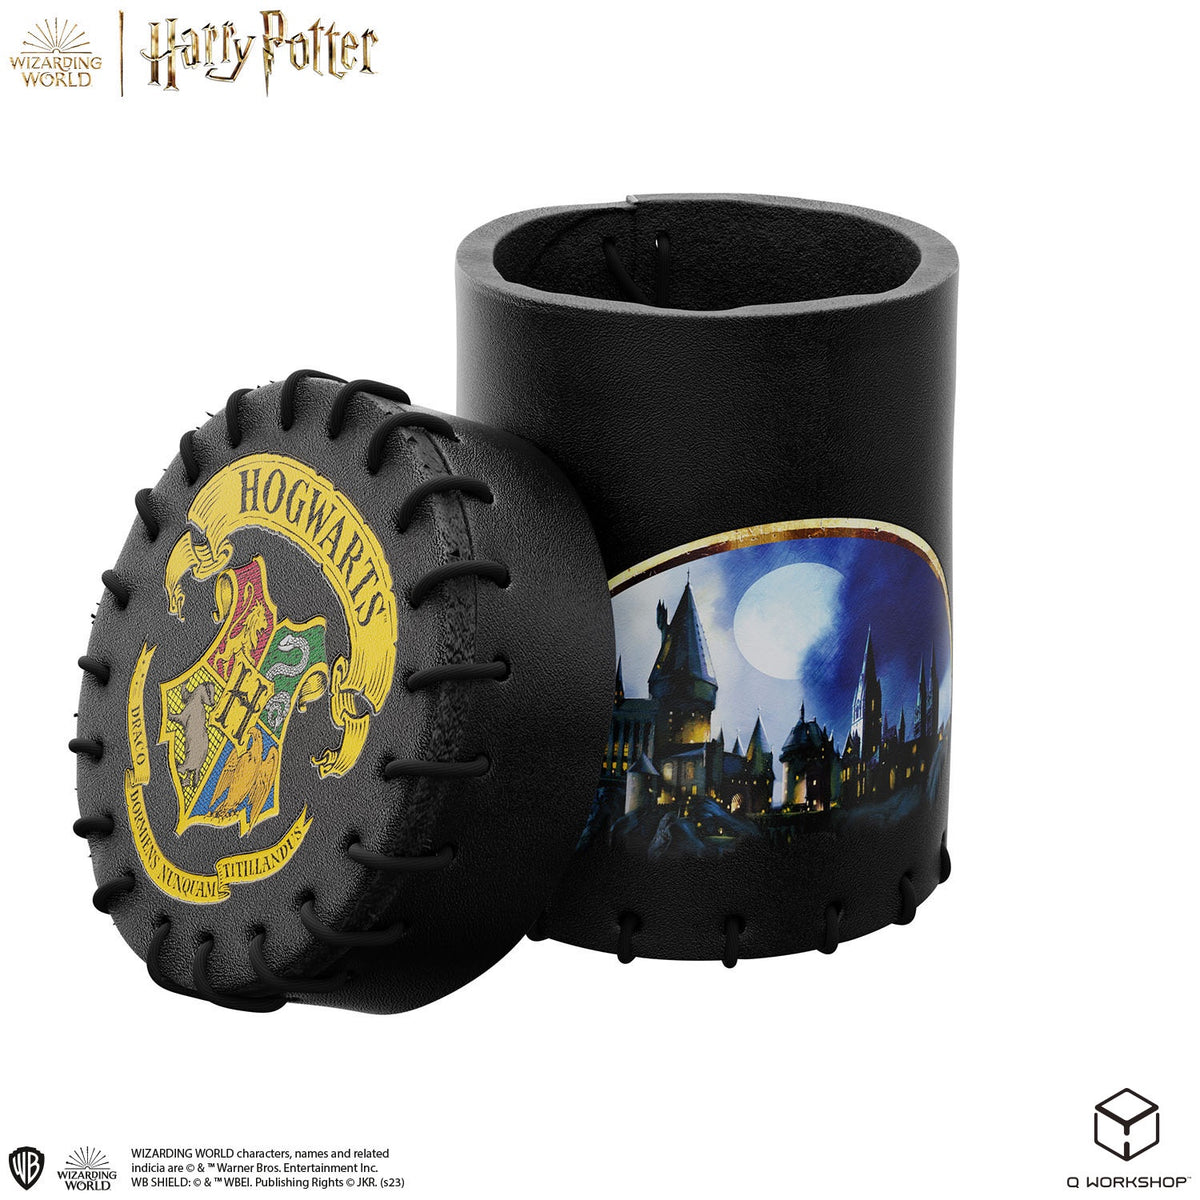 Q Workshop - Harry Potter Hogwarts Dice Cup